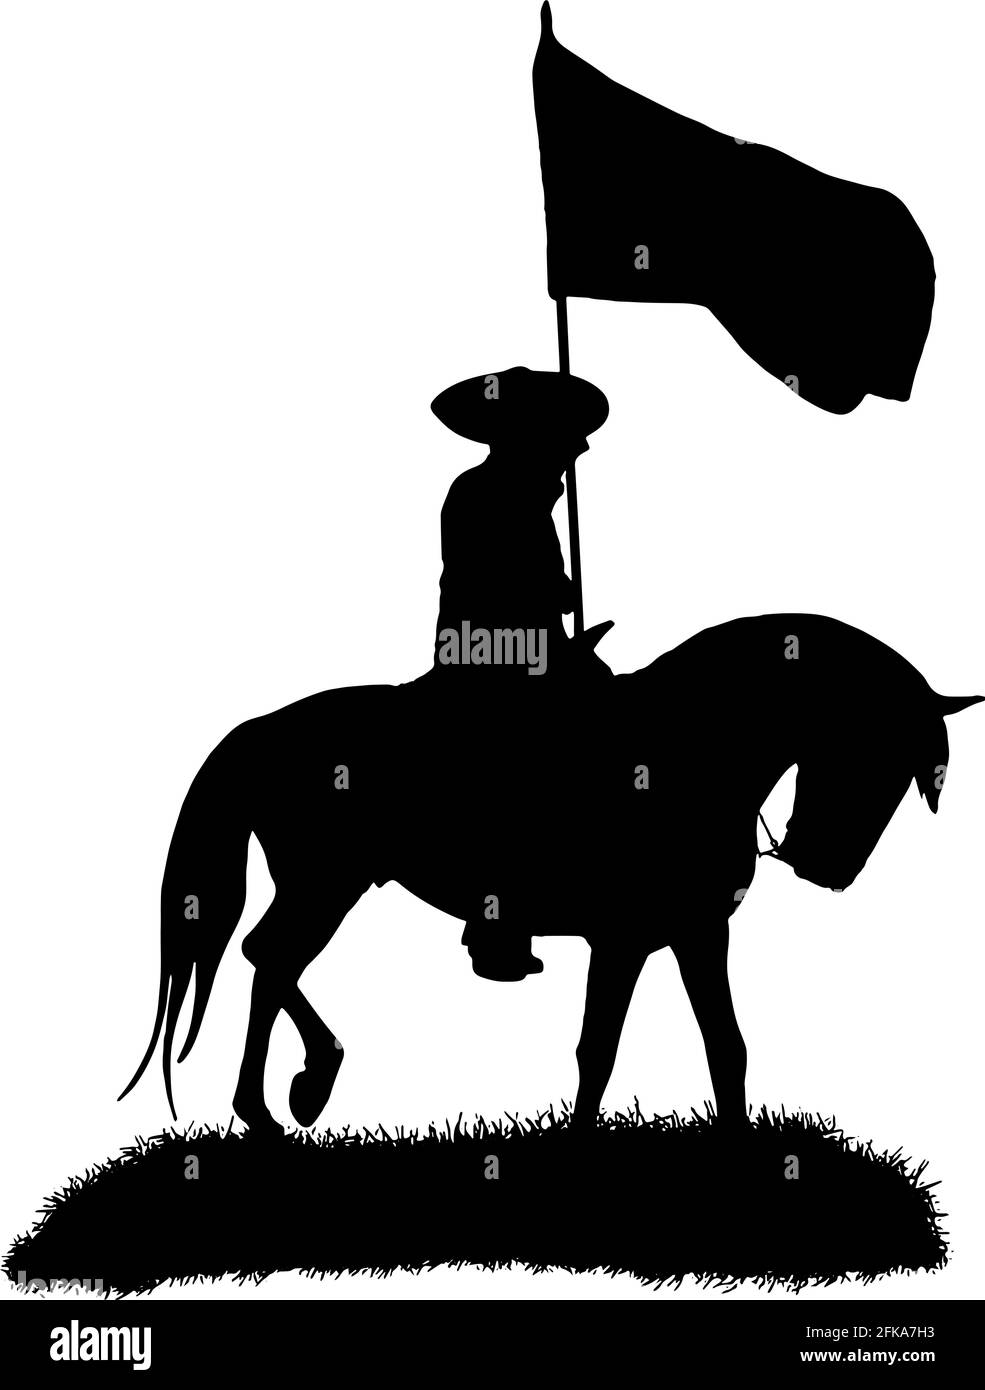 Mexikanischer Cowboy, der auf einem Charropferd reitet und eine Flagge mit Vektor-Silhouette in Schwarz auf weißem Hintergrund trägt Stock Vektor